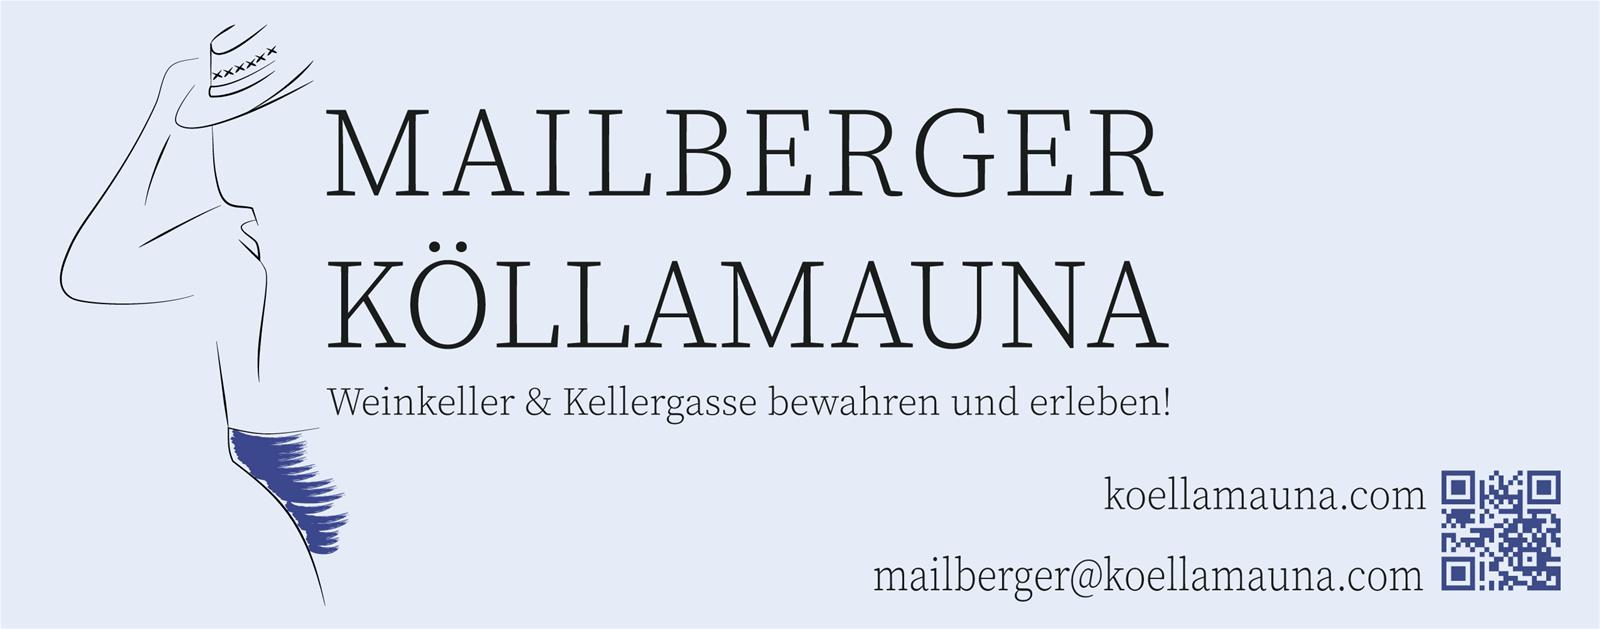 Mailberger Köllamauna